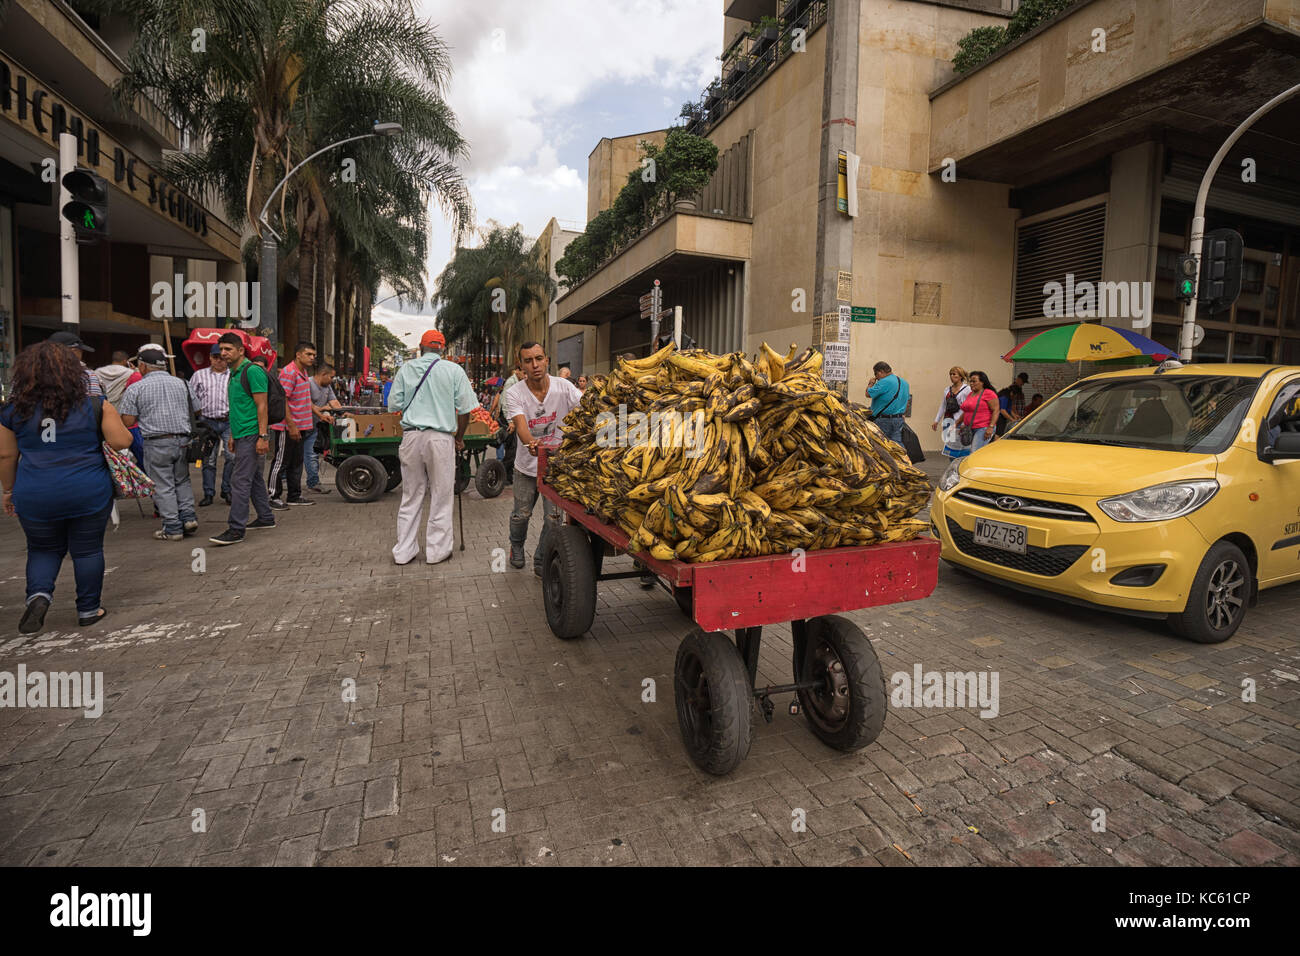 Settembre 26, 2017 a Medellin, Colombia: un fornitore di telefonia mobile spingendo un carrello pieno di banane nel centro della città Foto Stock